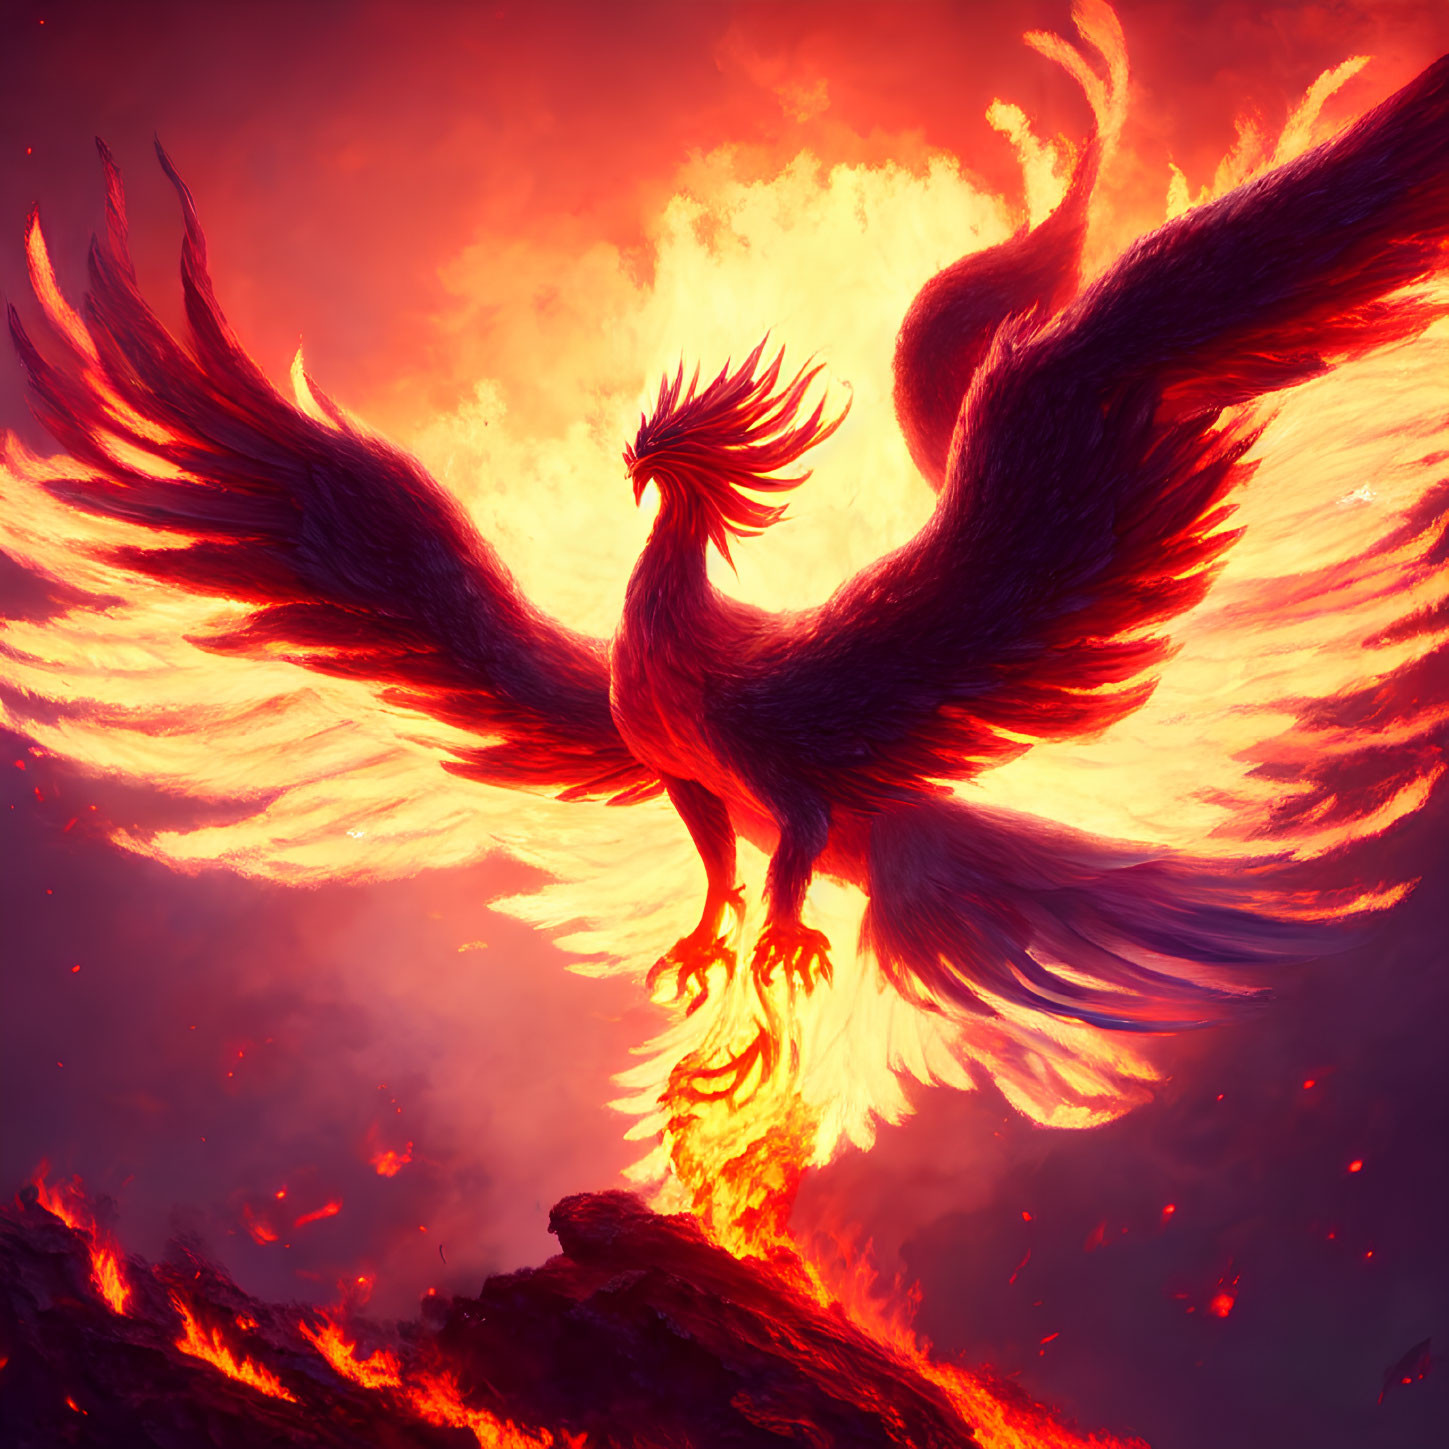 Majestic phoenix with fiery wings soaring over smoldering terrain